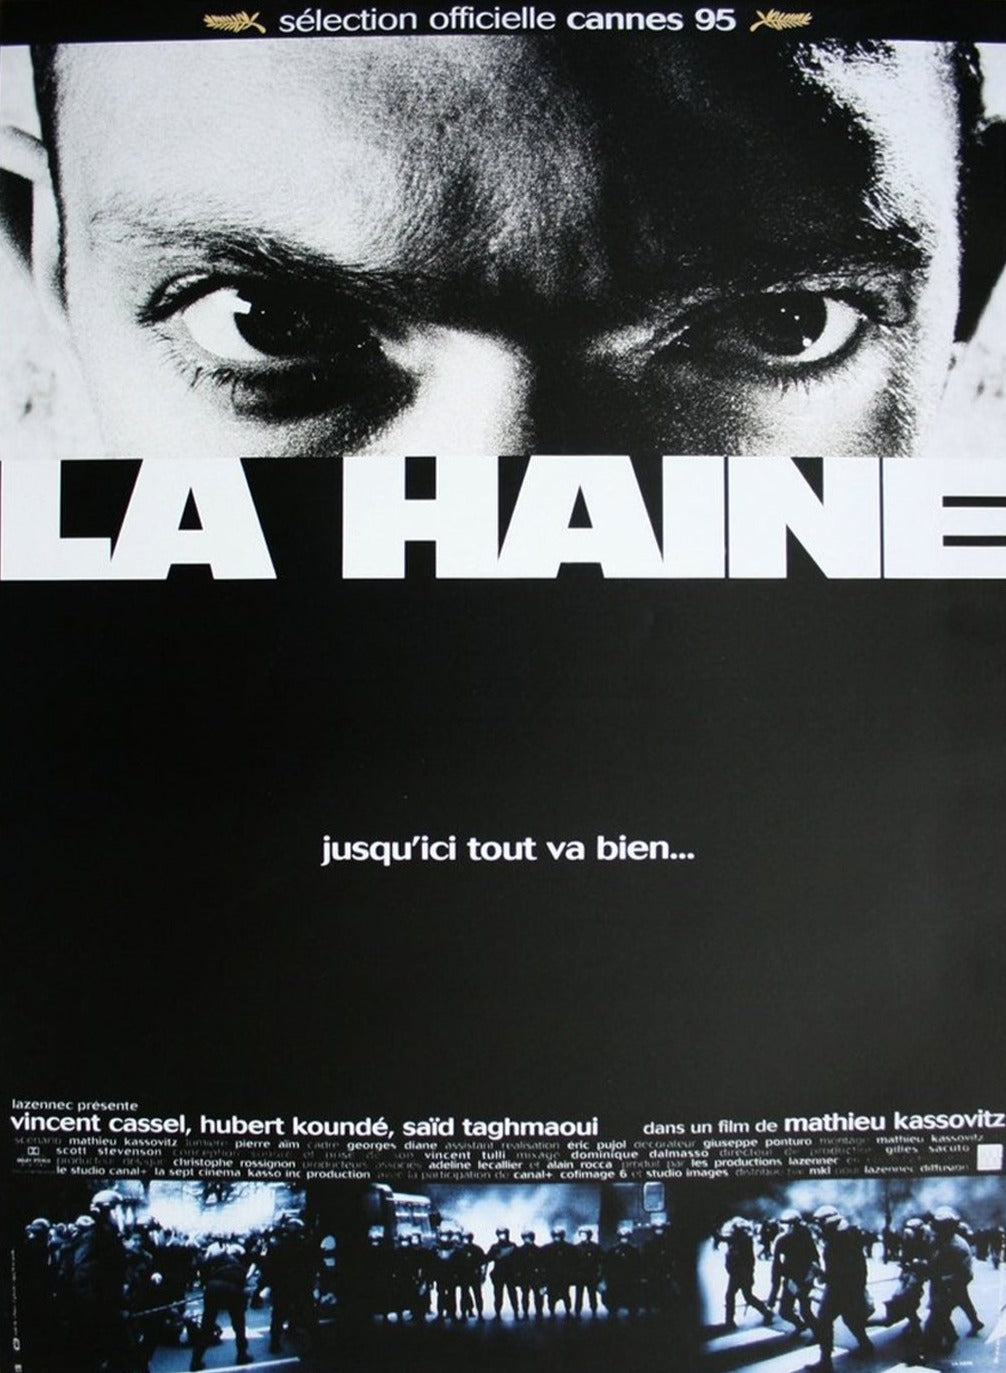 La Haine (French)